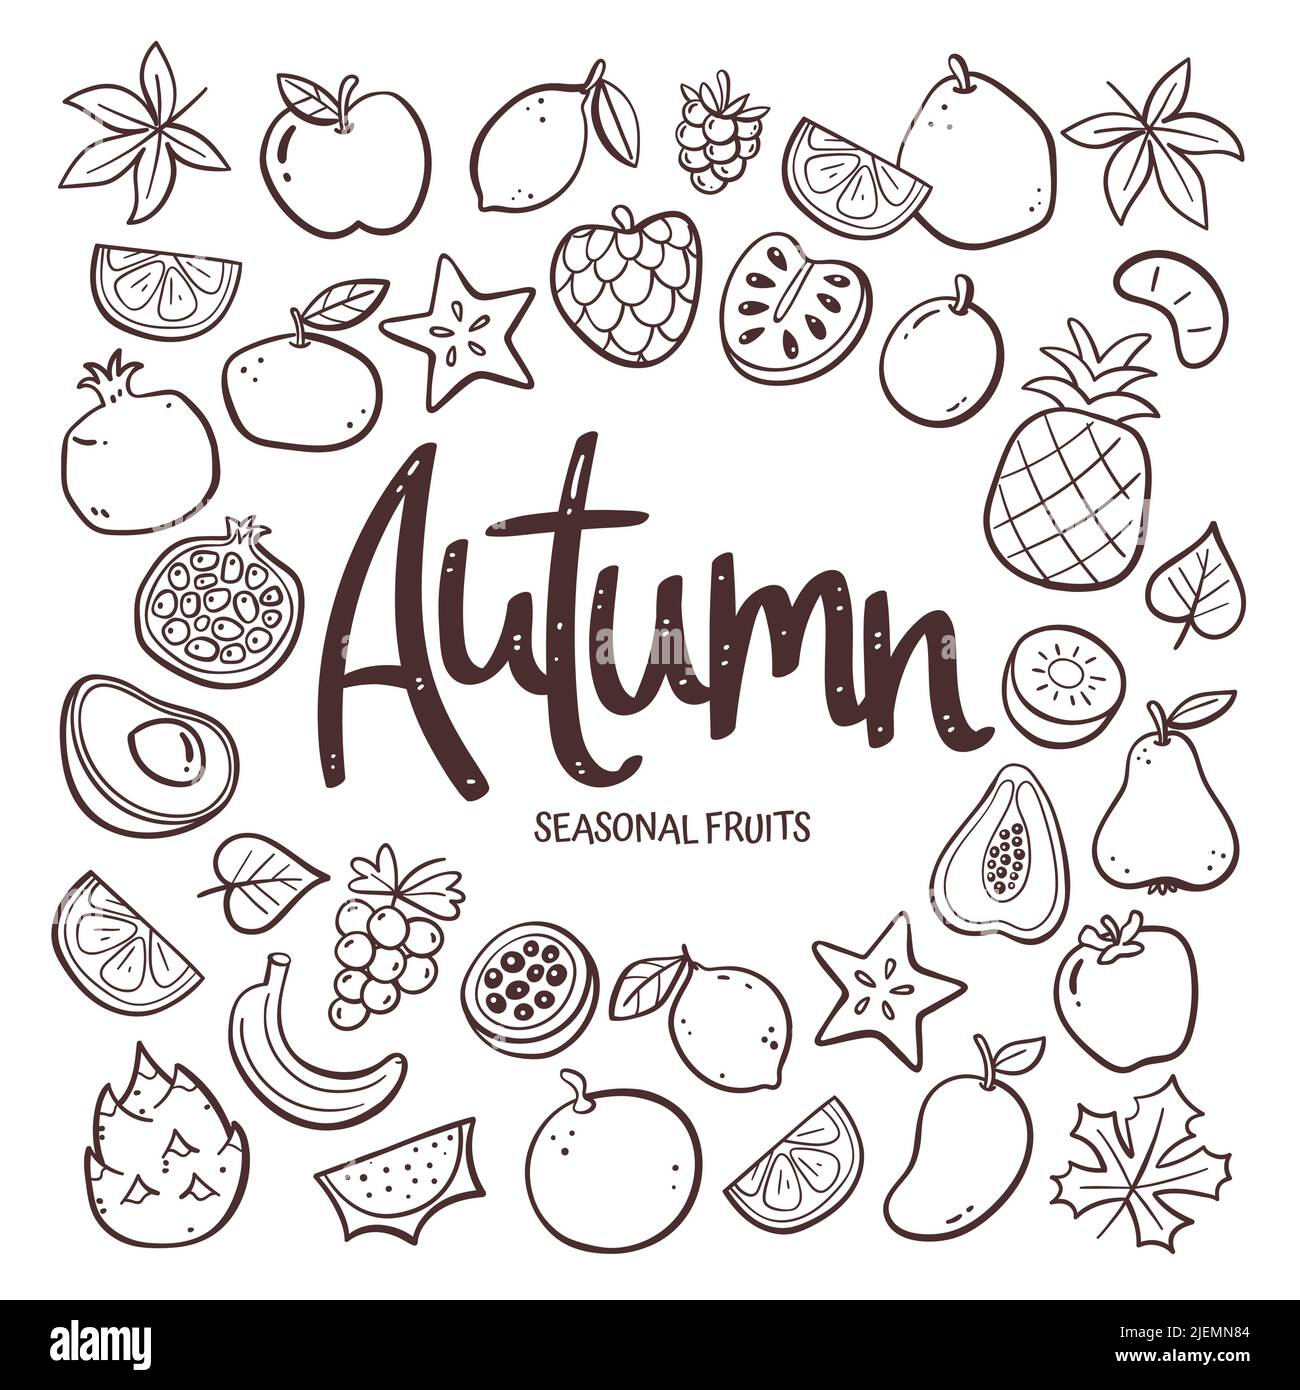 Saisonale Früchte Hintergrund. Handgezeichnete Herbstfrucht-Komposition aus Doodle-Vektor-Icons, isoliert auf weißem Hintergrund. Stock Vektor